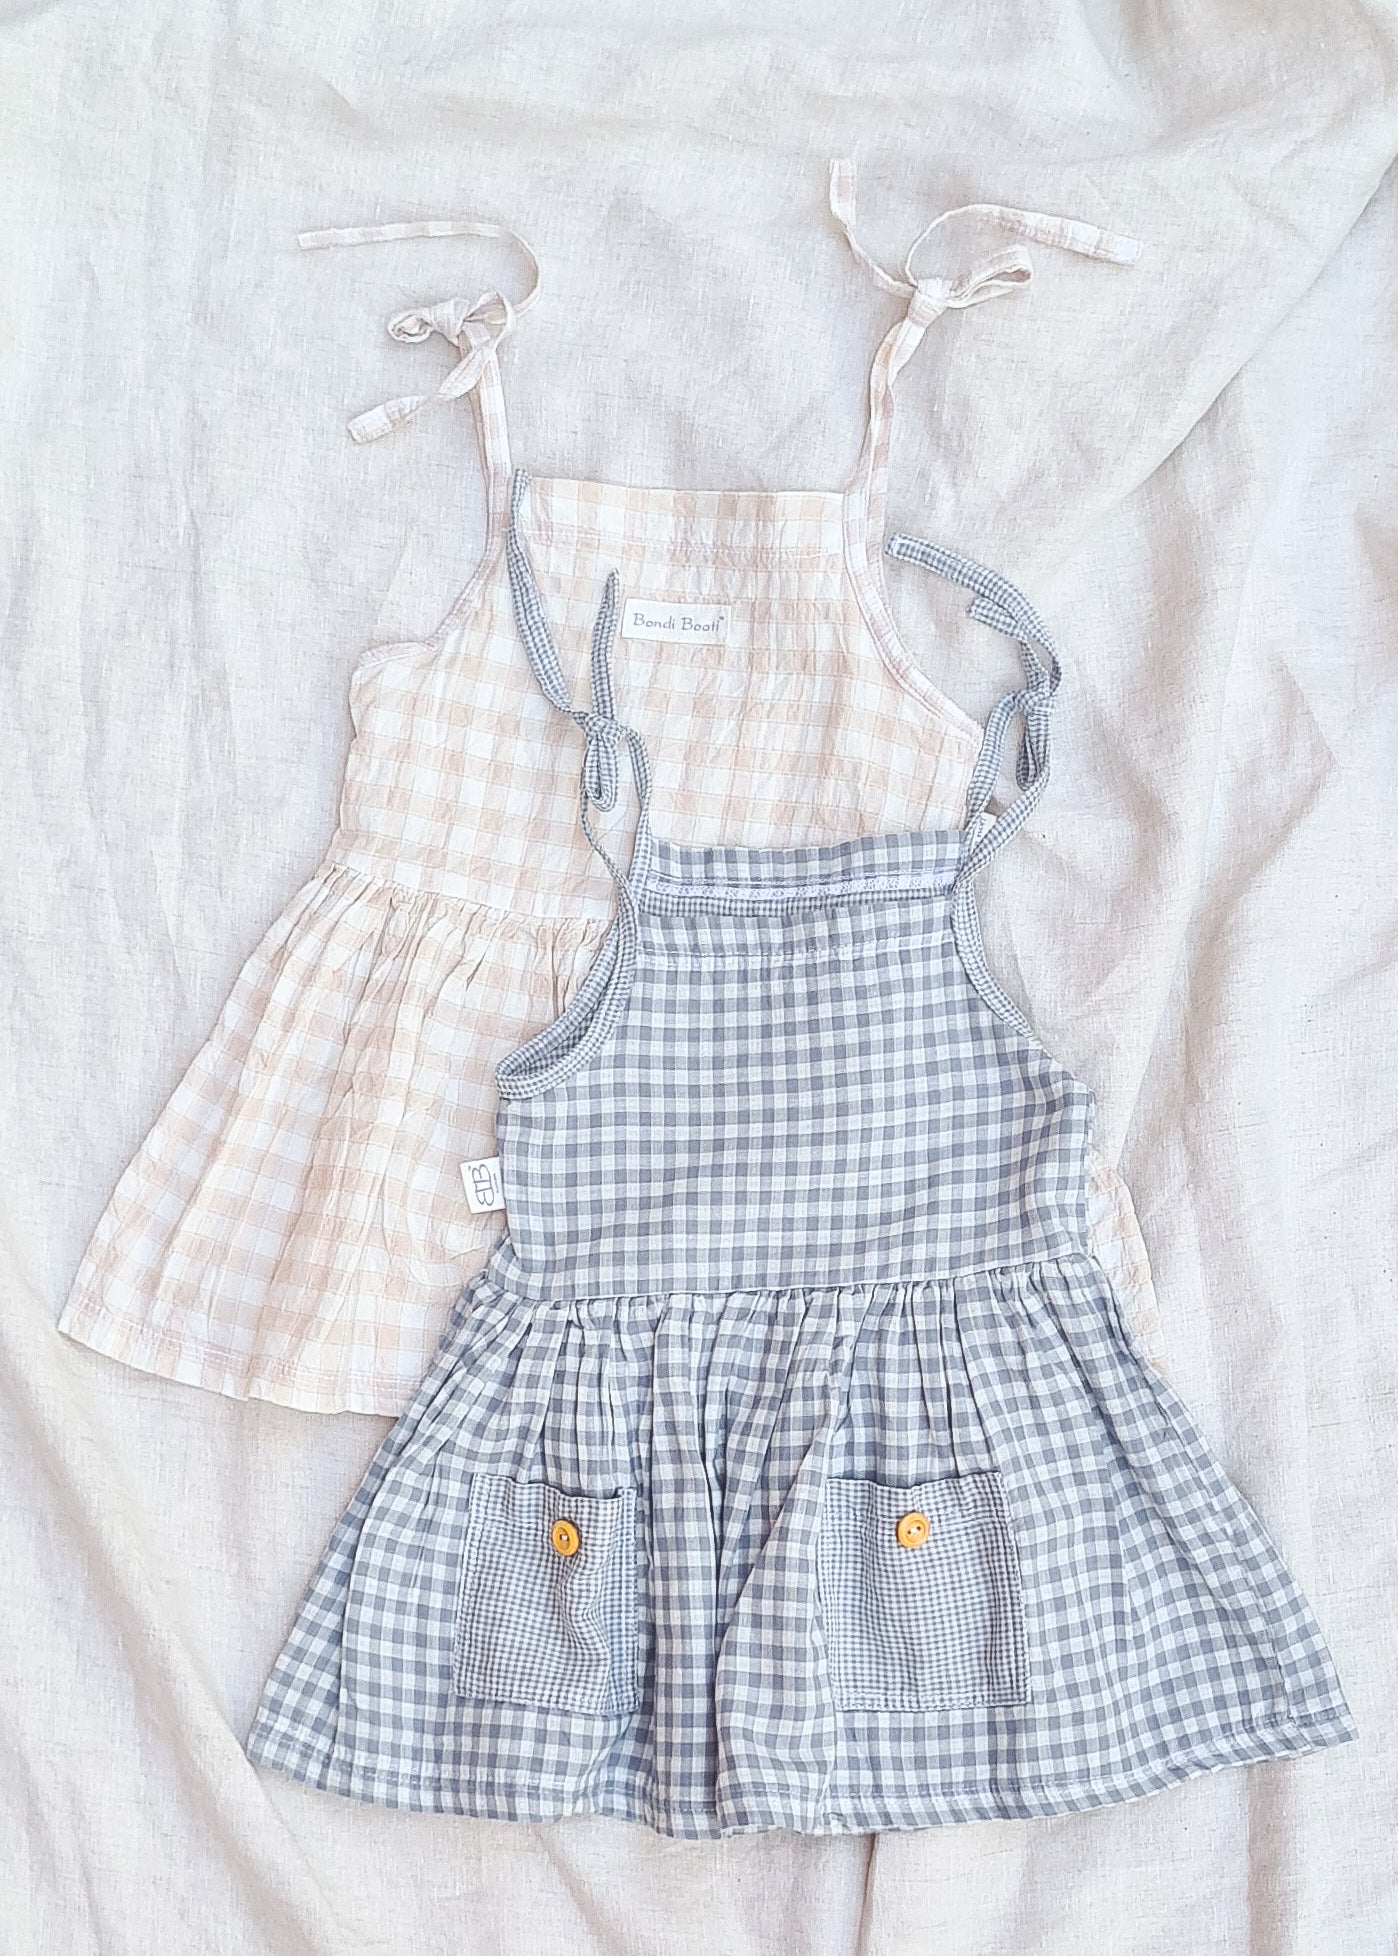 Beige linen dress baby toddler girl